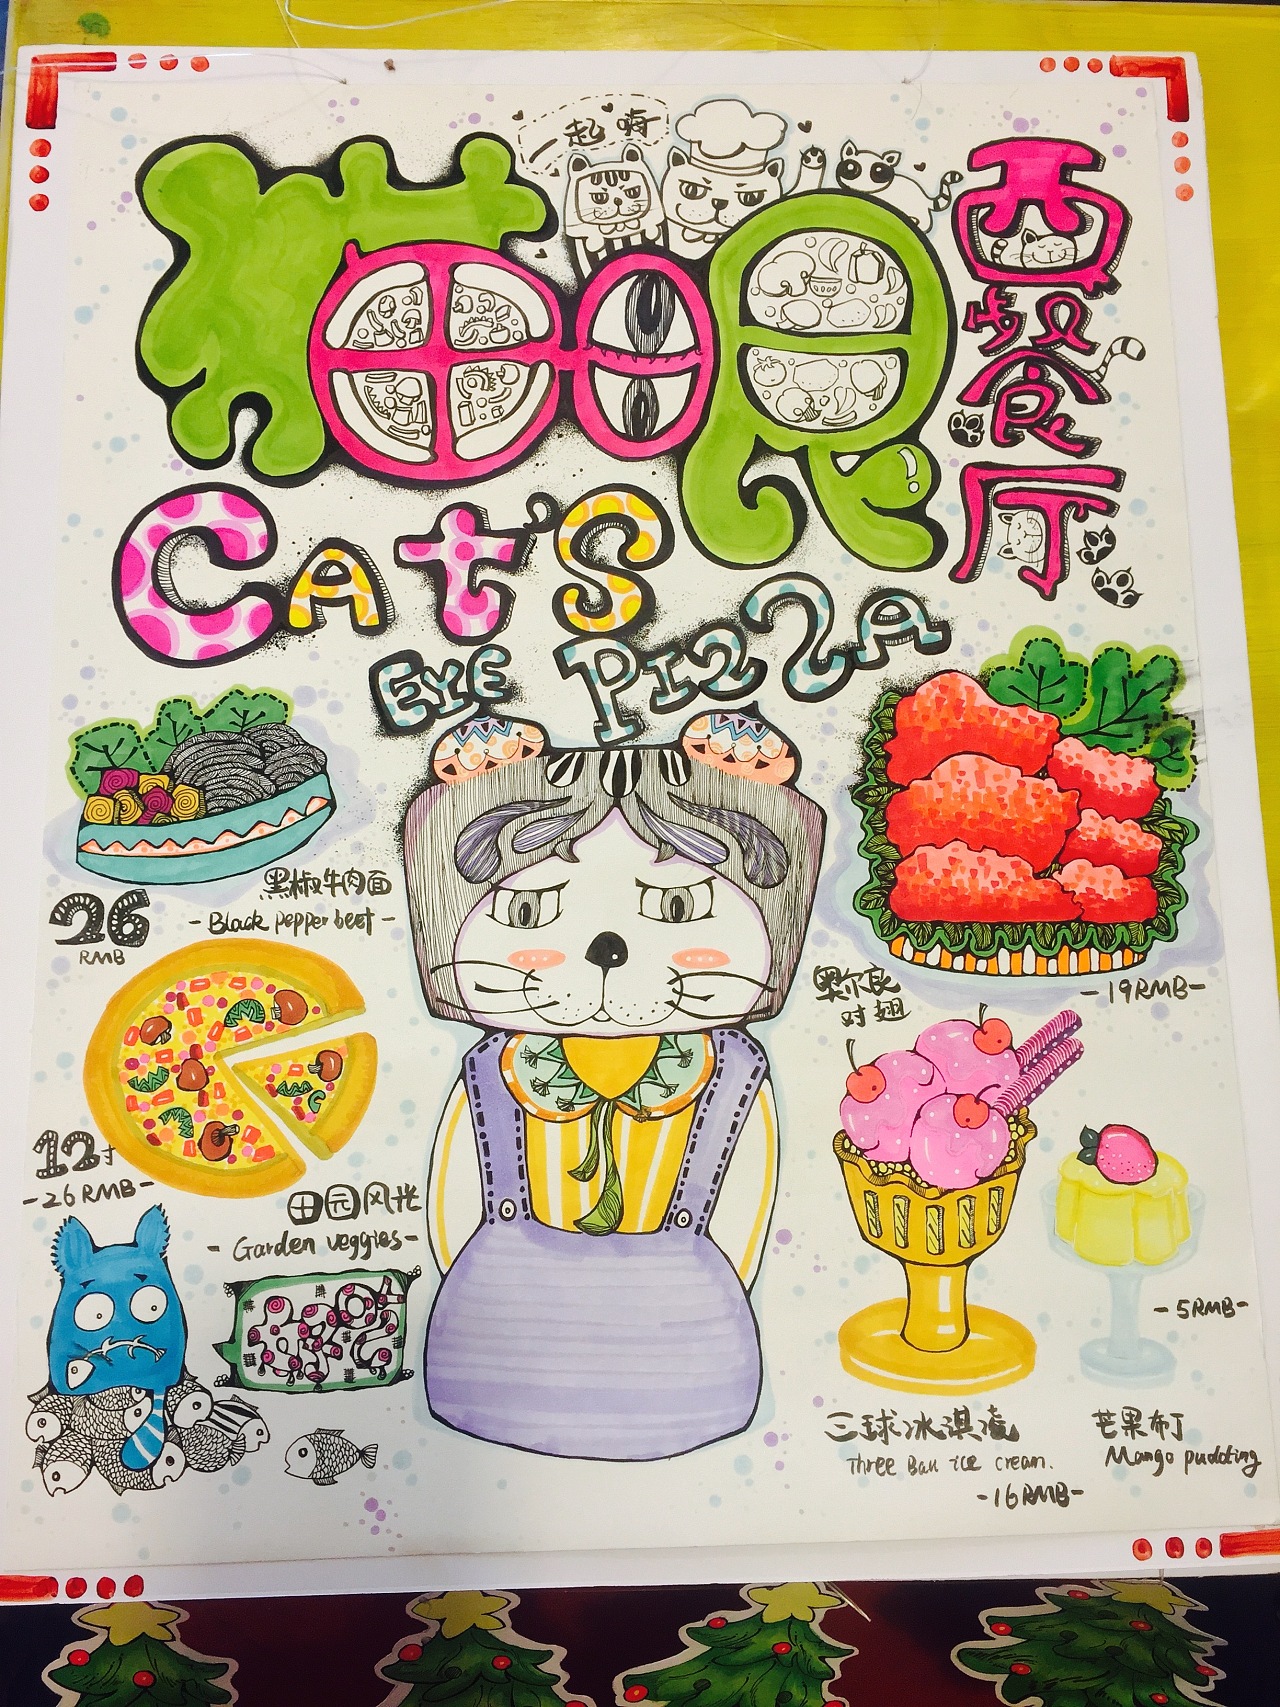 针对西餐厅猫物语形象做的pop手绘海报.